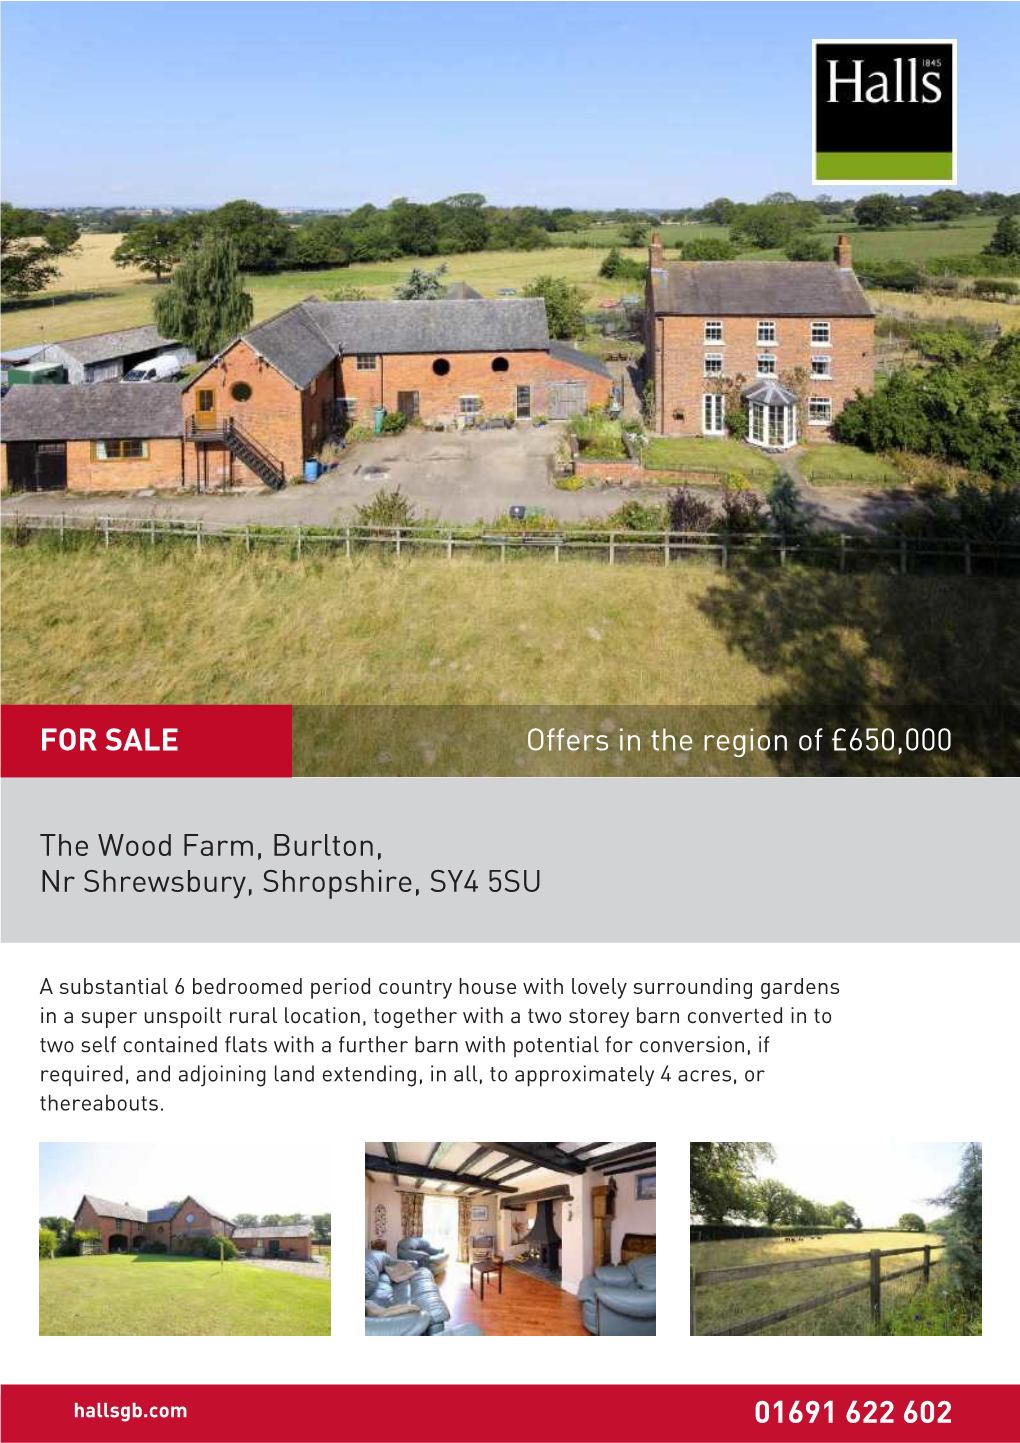 The Wood Farm, Burlton, Nr Shrewsbury, Shropshire, SY4 5SU